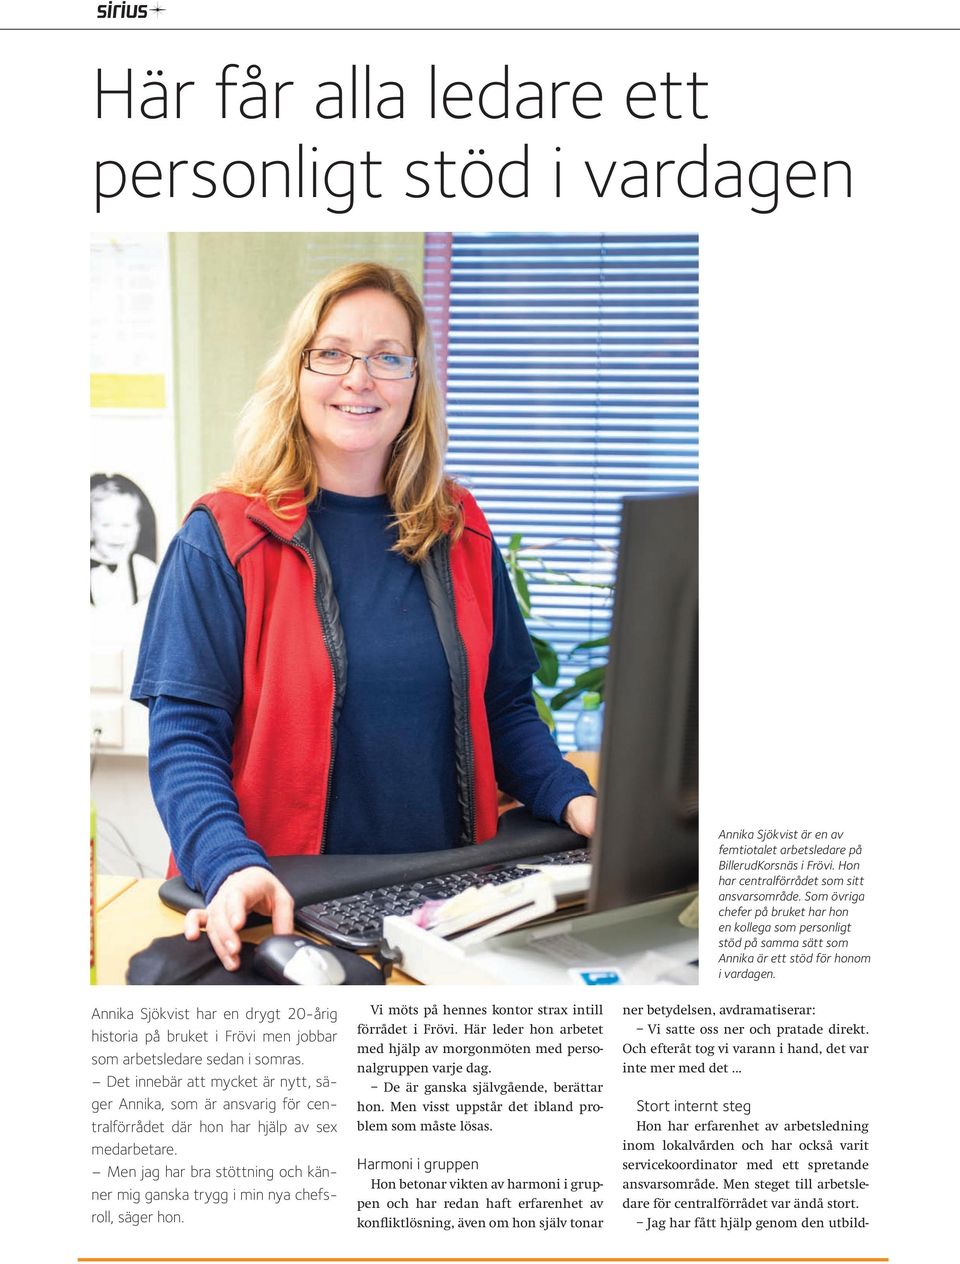 Annika Sjökvist har en drygt 20-årig historia på bruket i Frövi men jobbar som arbetsledare sedan i somras.